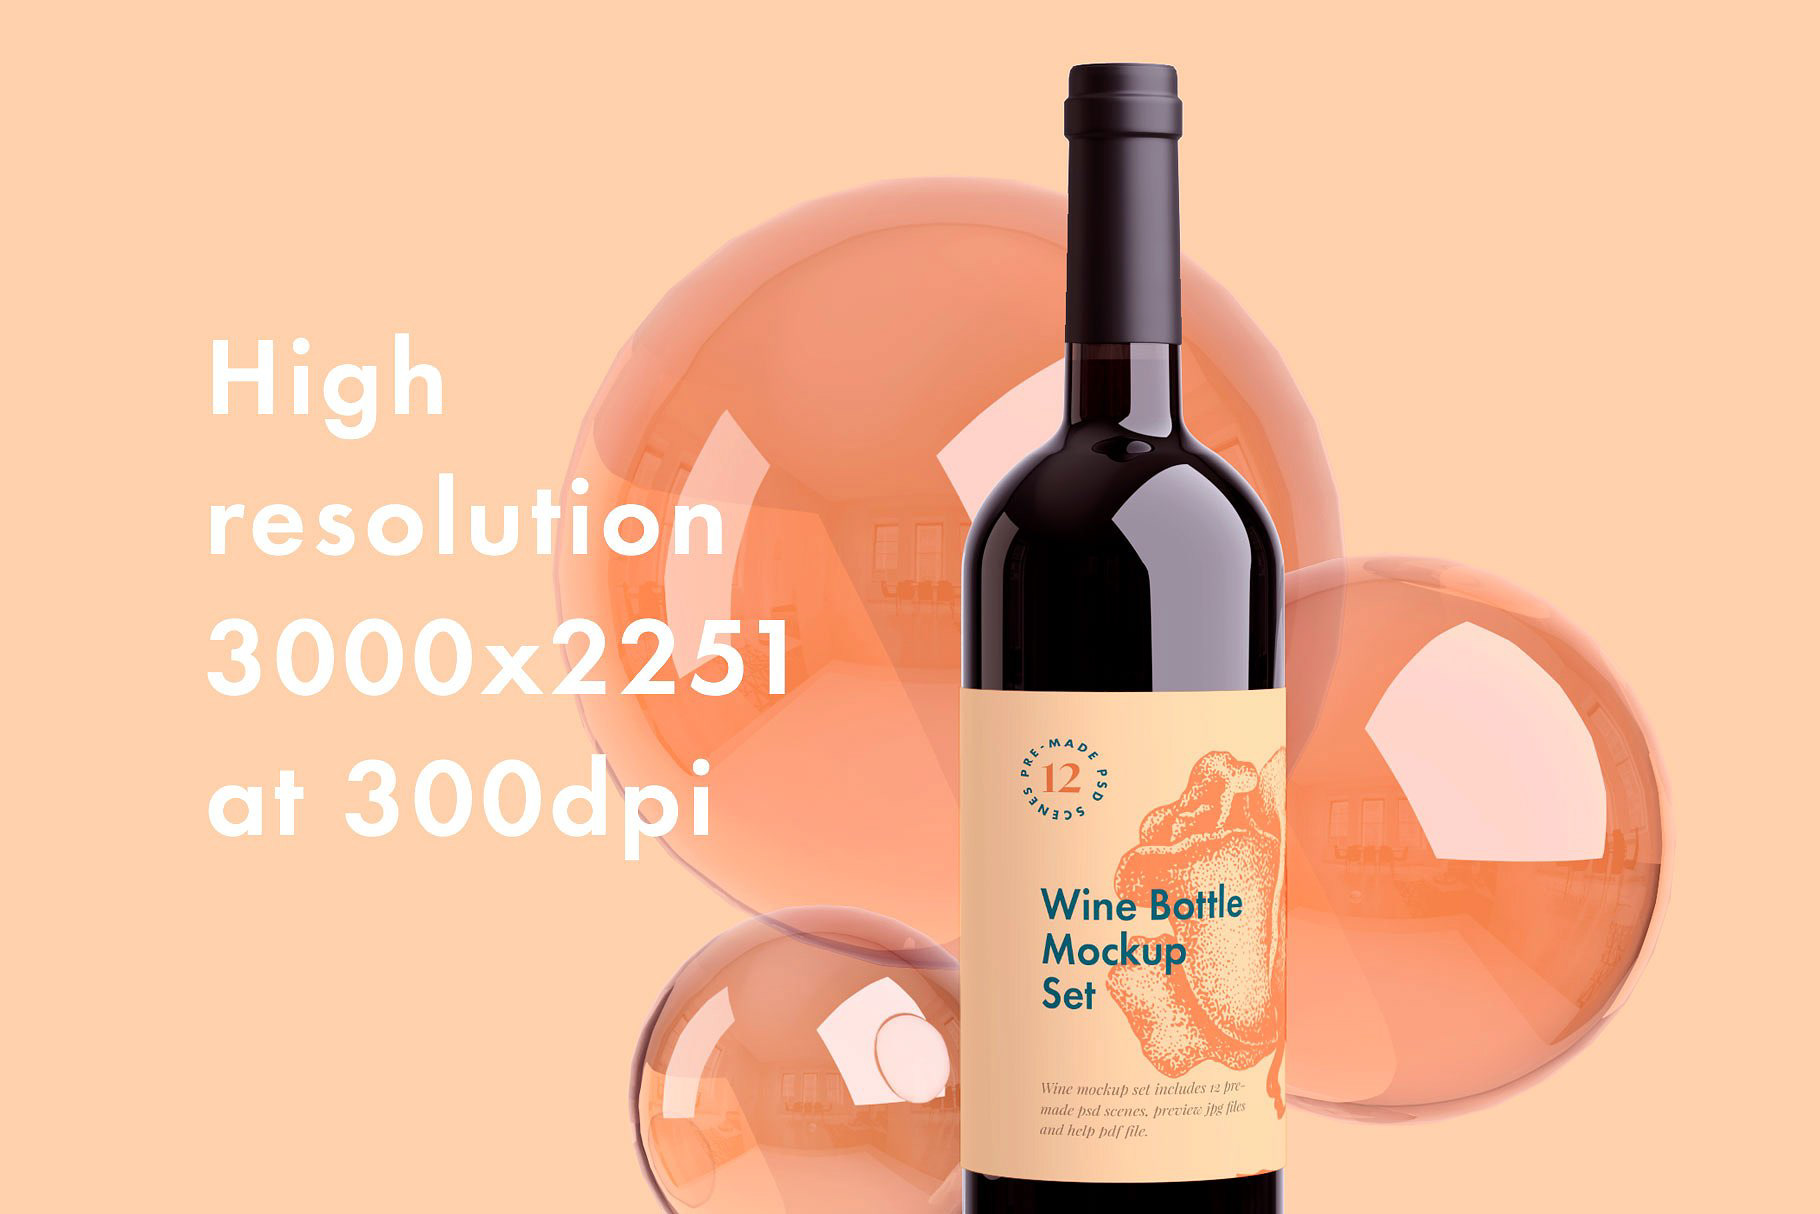 多角度的红酒酒瓶贴纸展示样机 Multi-Angle Red Wine Bottle Sticker Display Prototype插图1